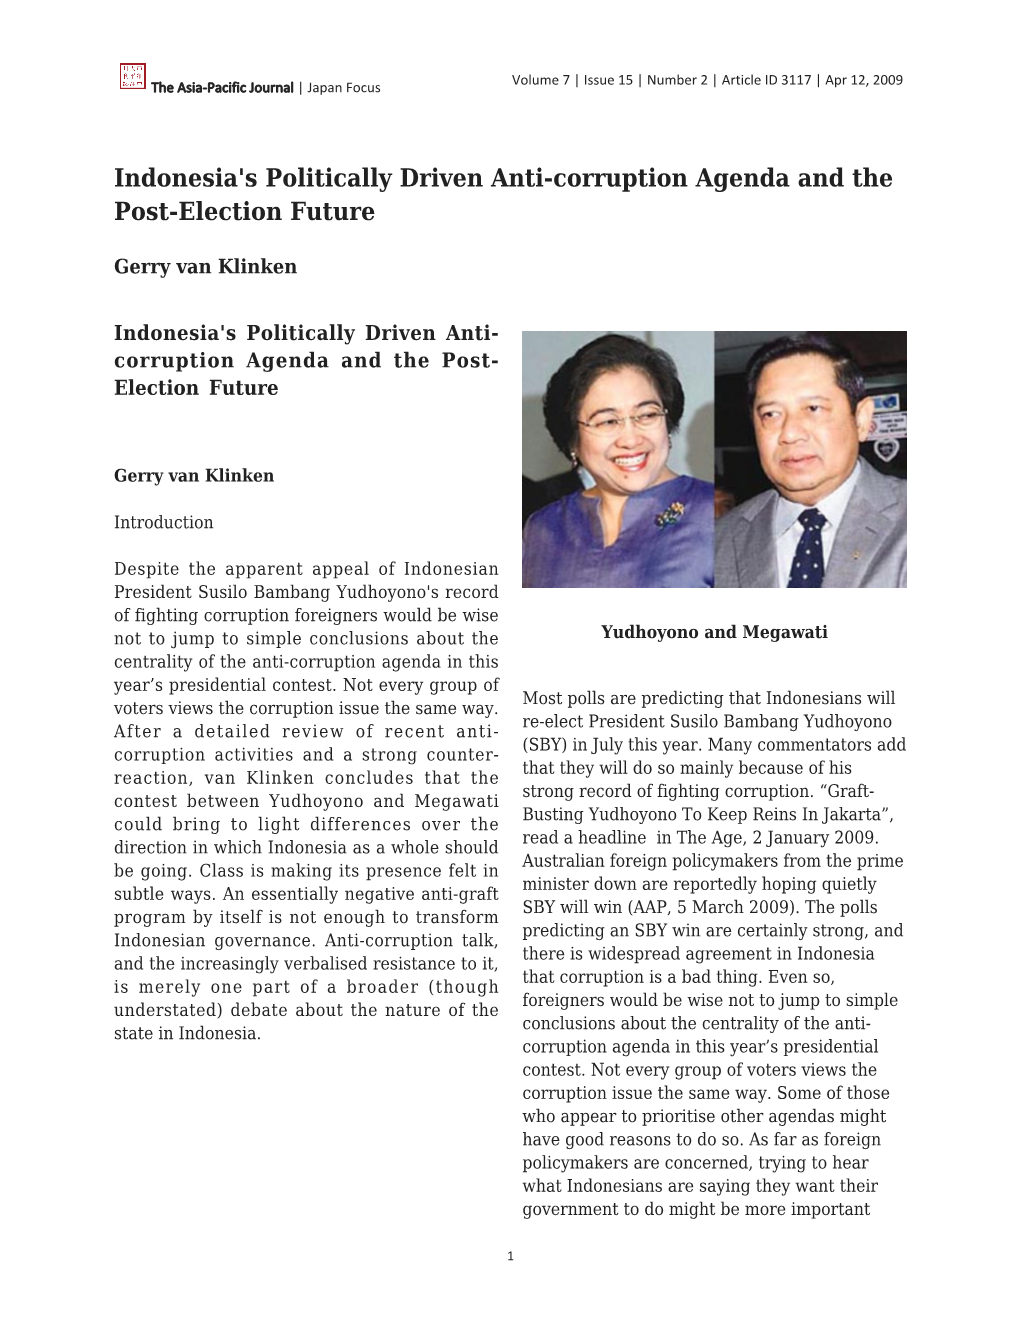 Indonesia's Politically Driven Anti-Corruption Agenda and the Post-Election Future